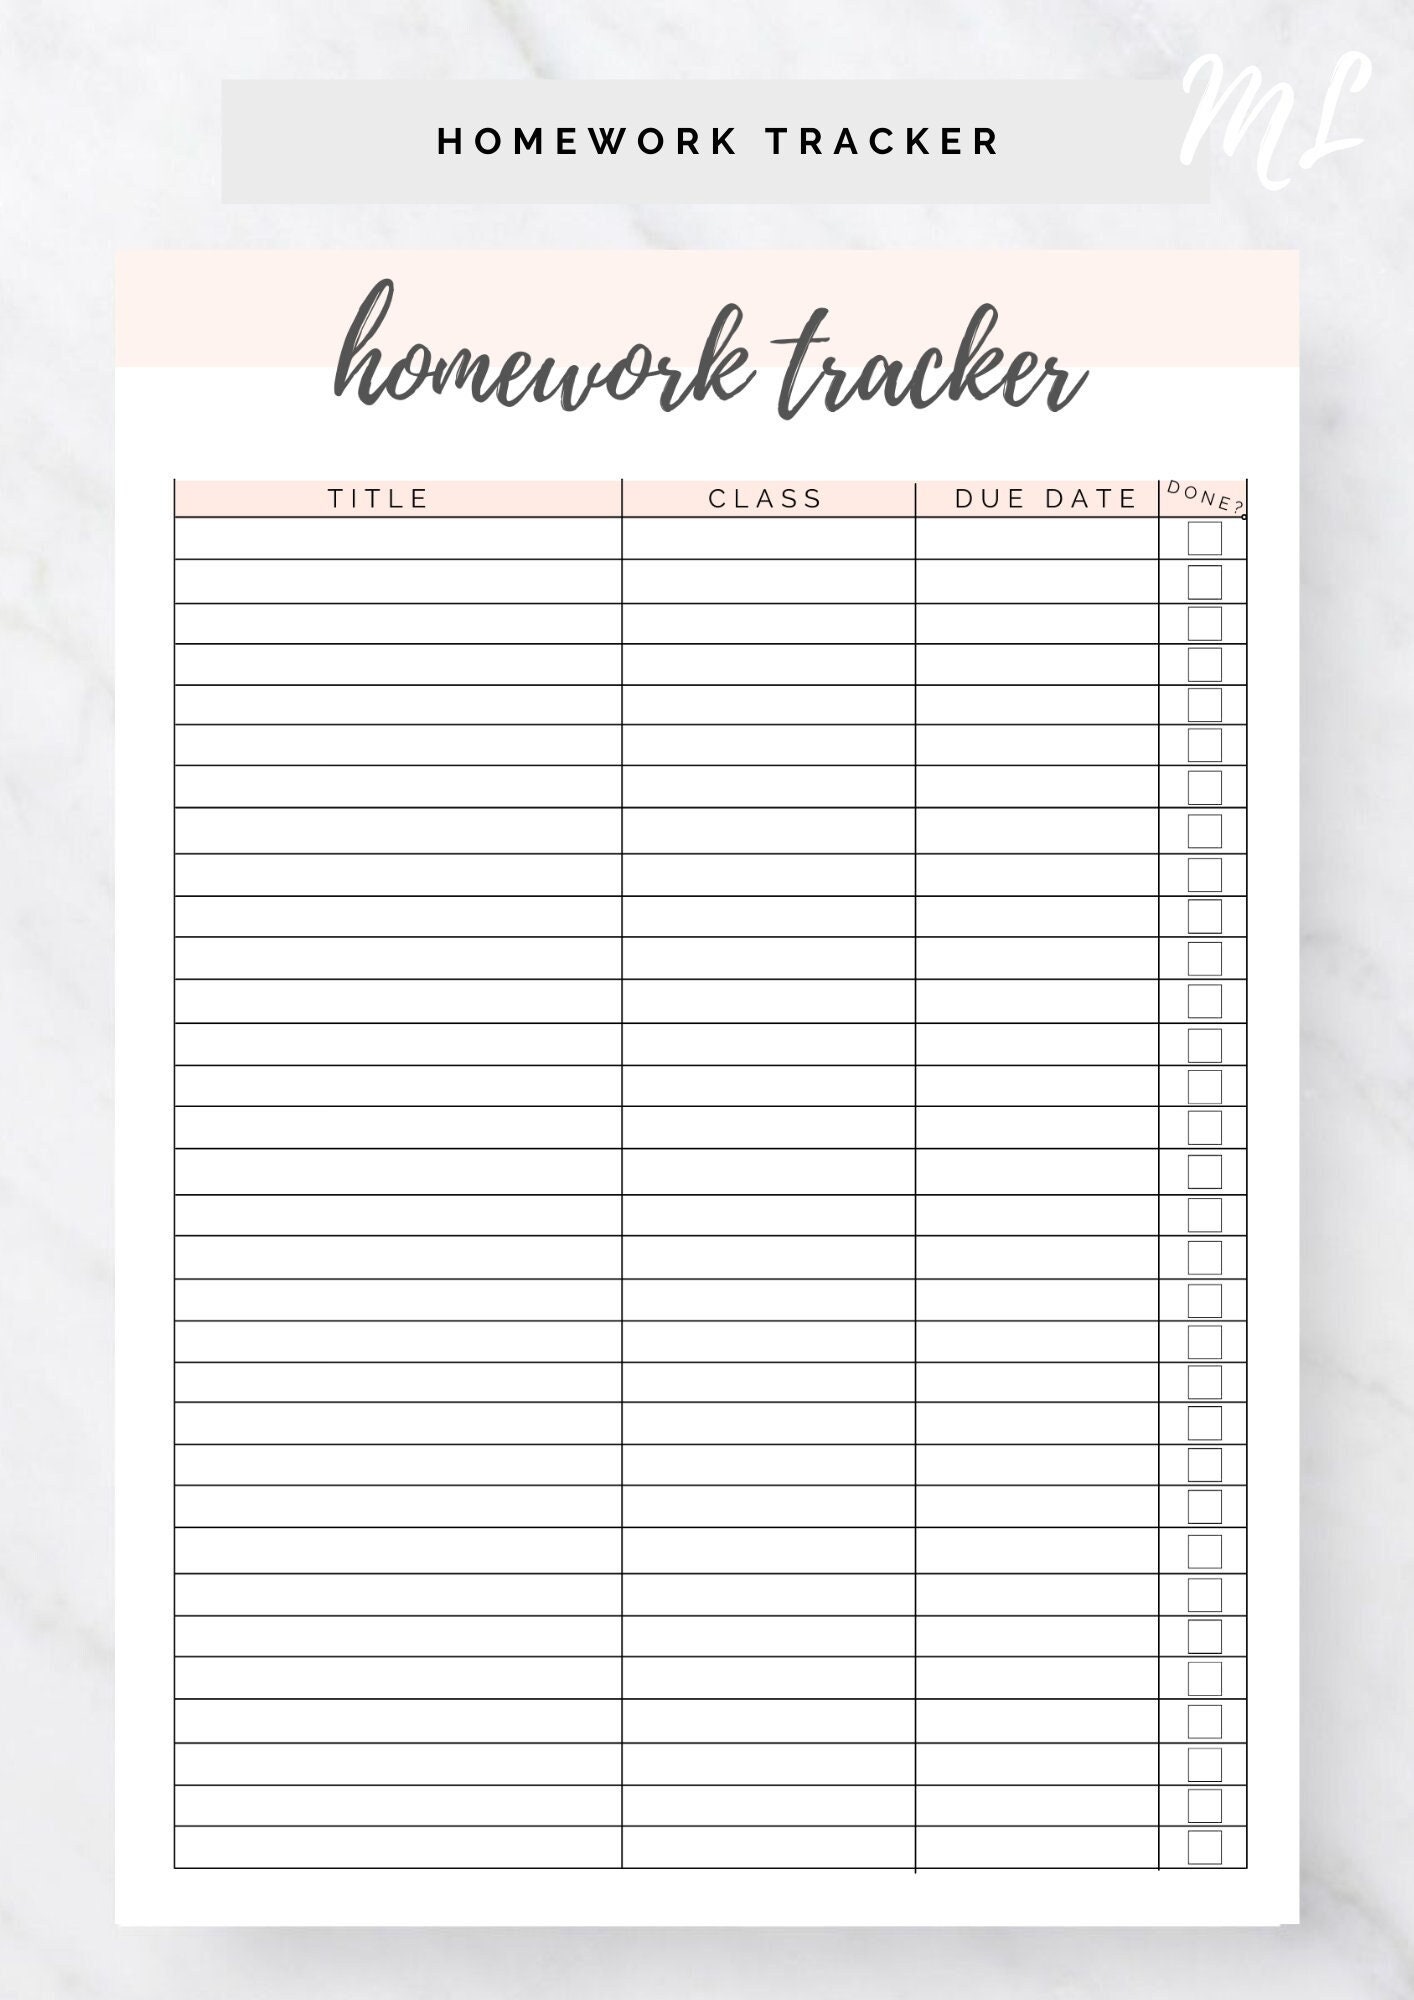 aesthetic homework tracker